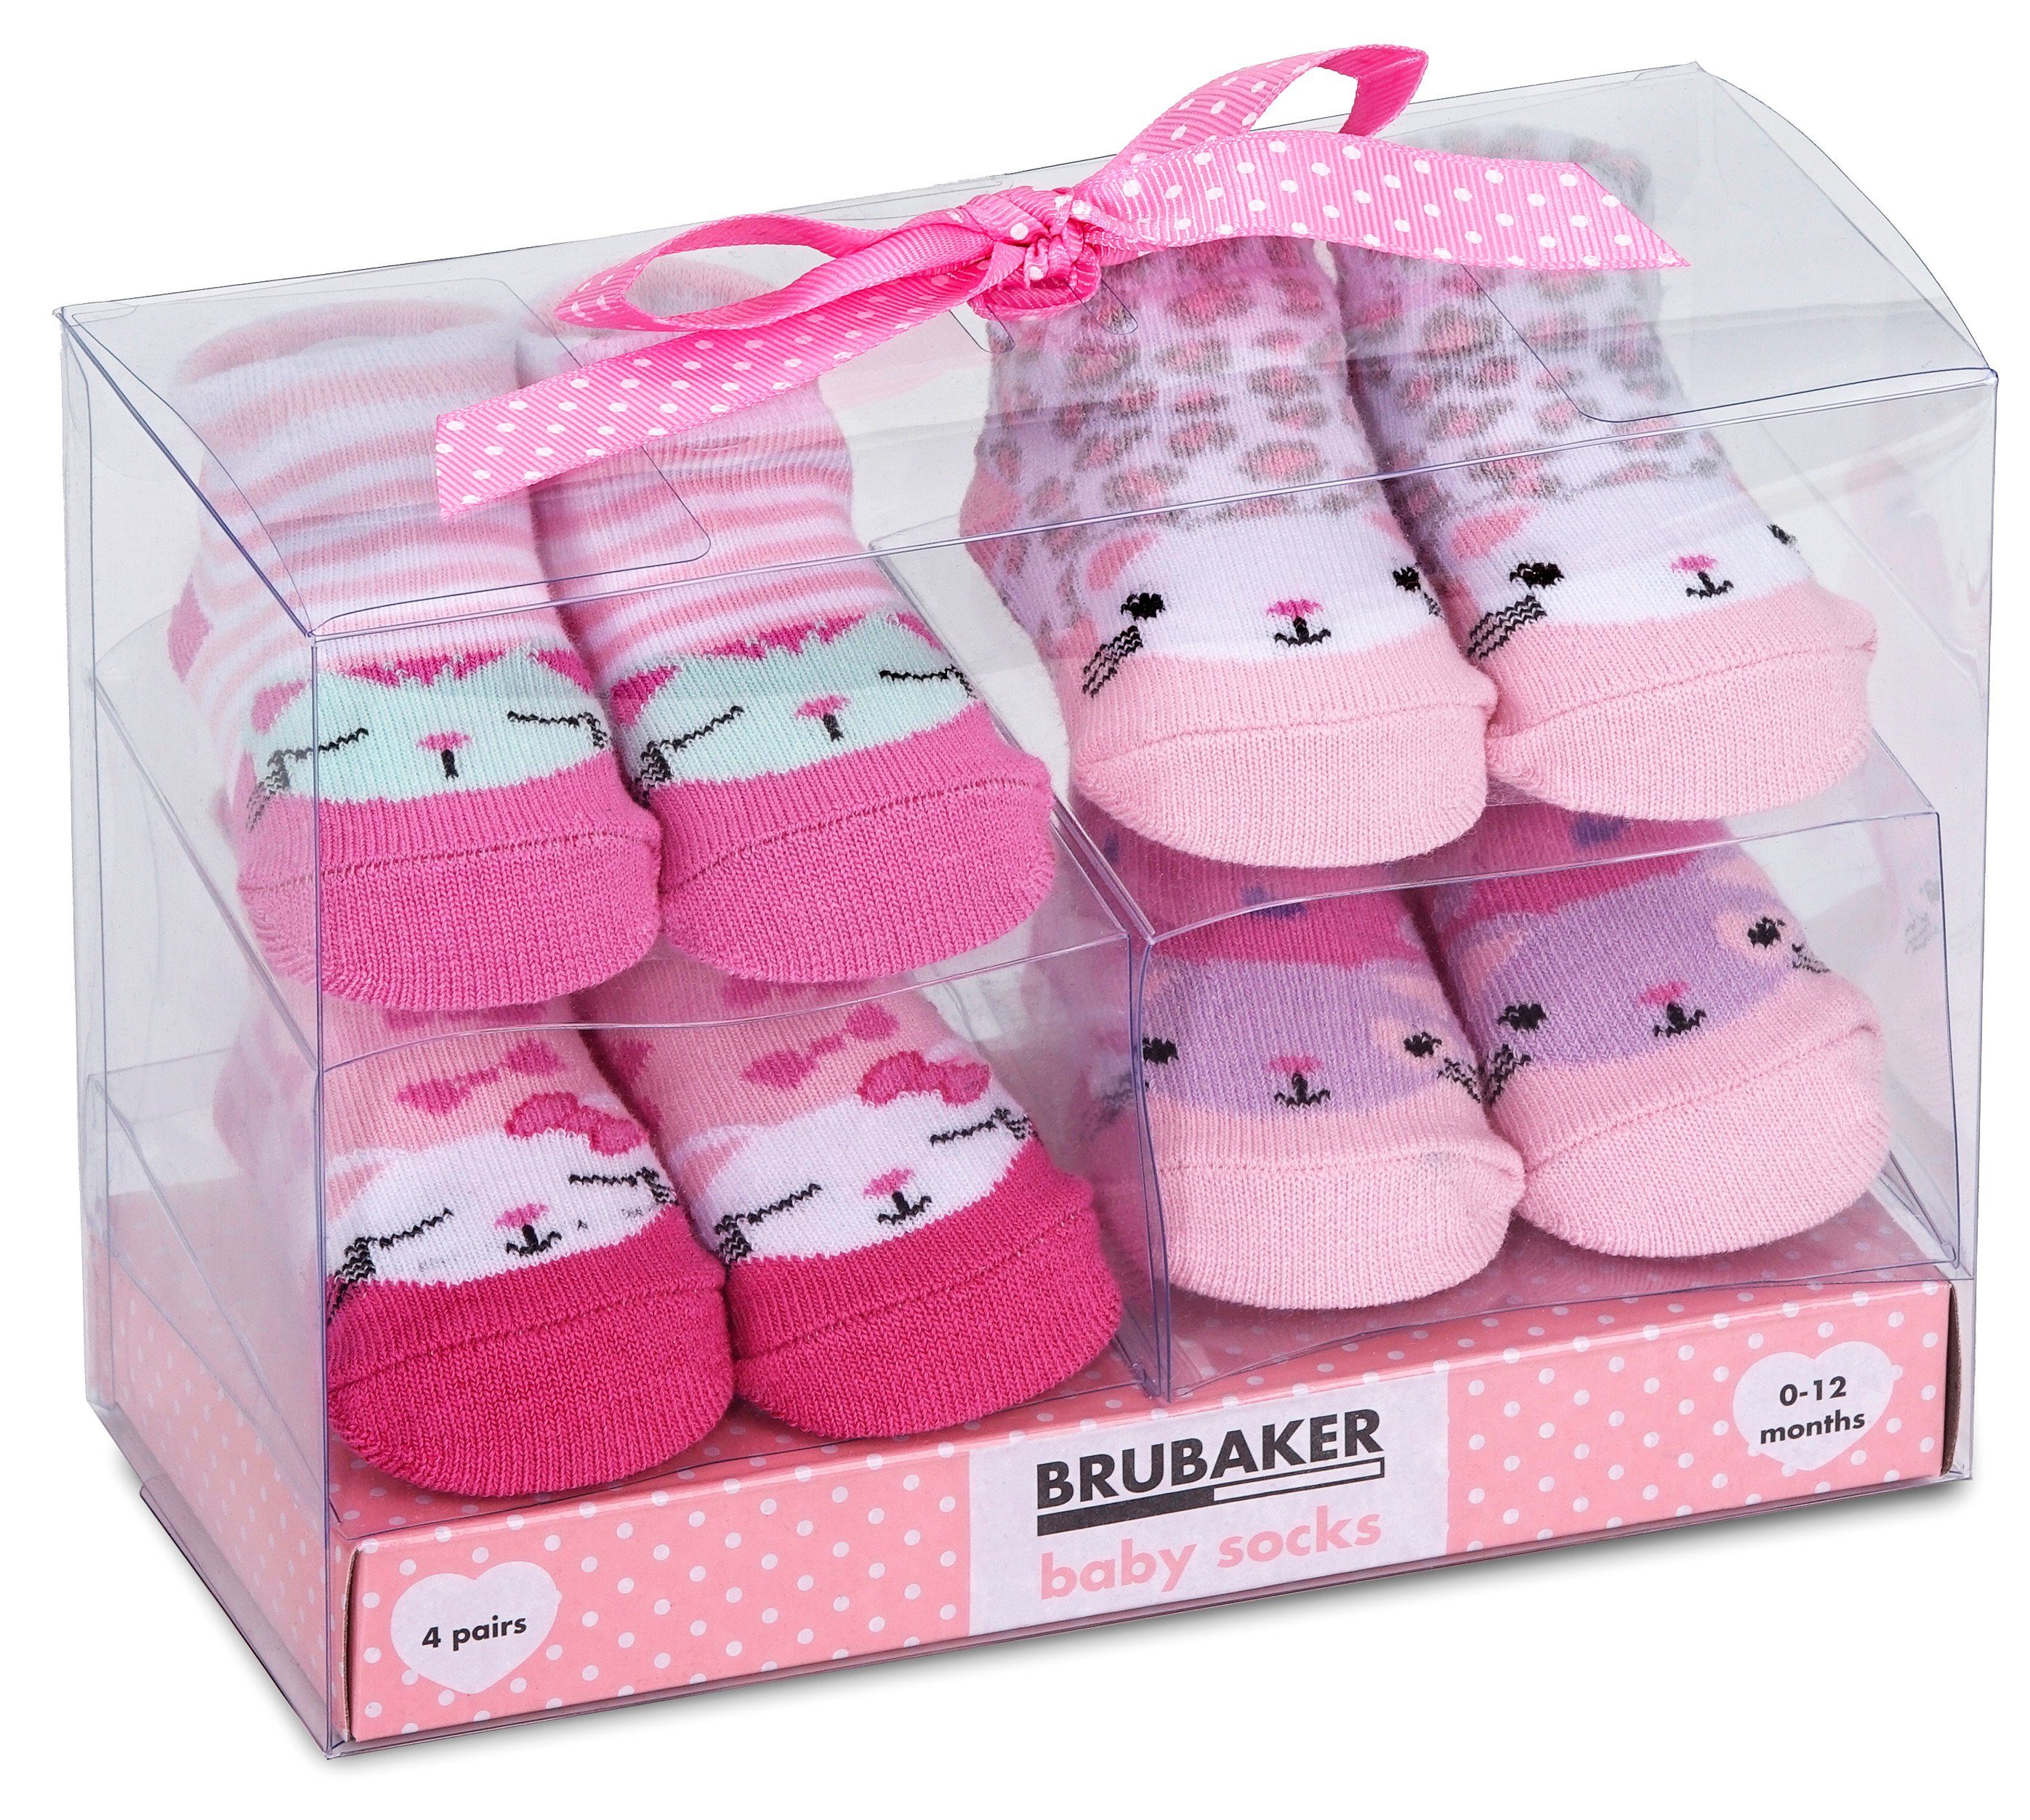 BRUBAKER Socken Babysocken für Mädchen 0-12 Monate (4-Paar, Baumwollsocken mit Katzen Motiven Pink/Rosa) Baby Geschenkset für Neugeborene in Geschenkverpackung mit Schleife